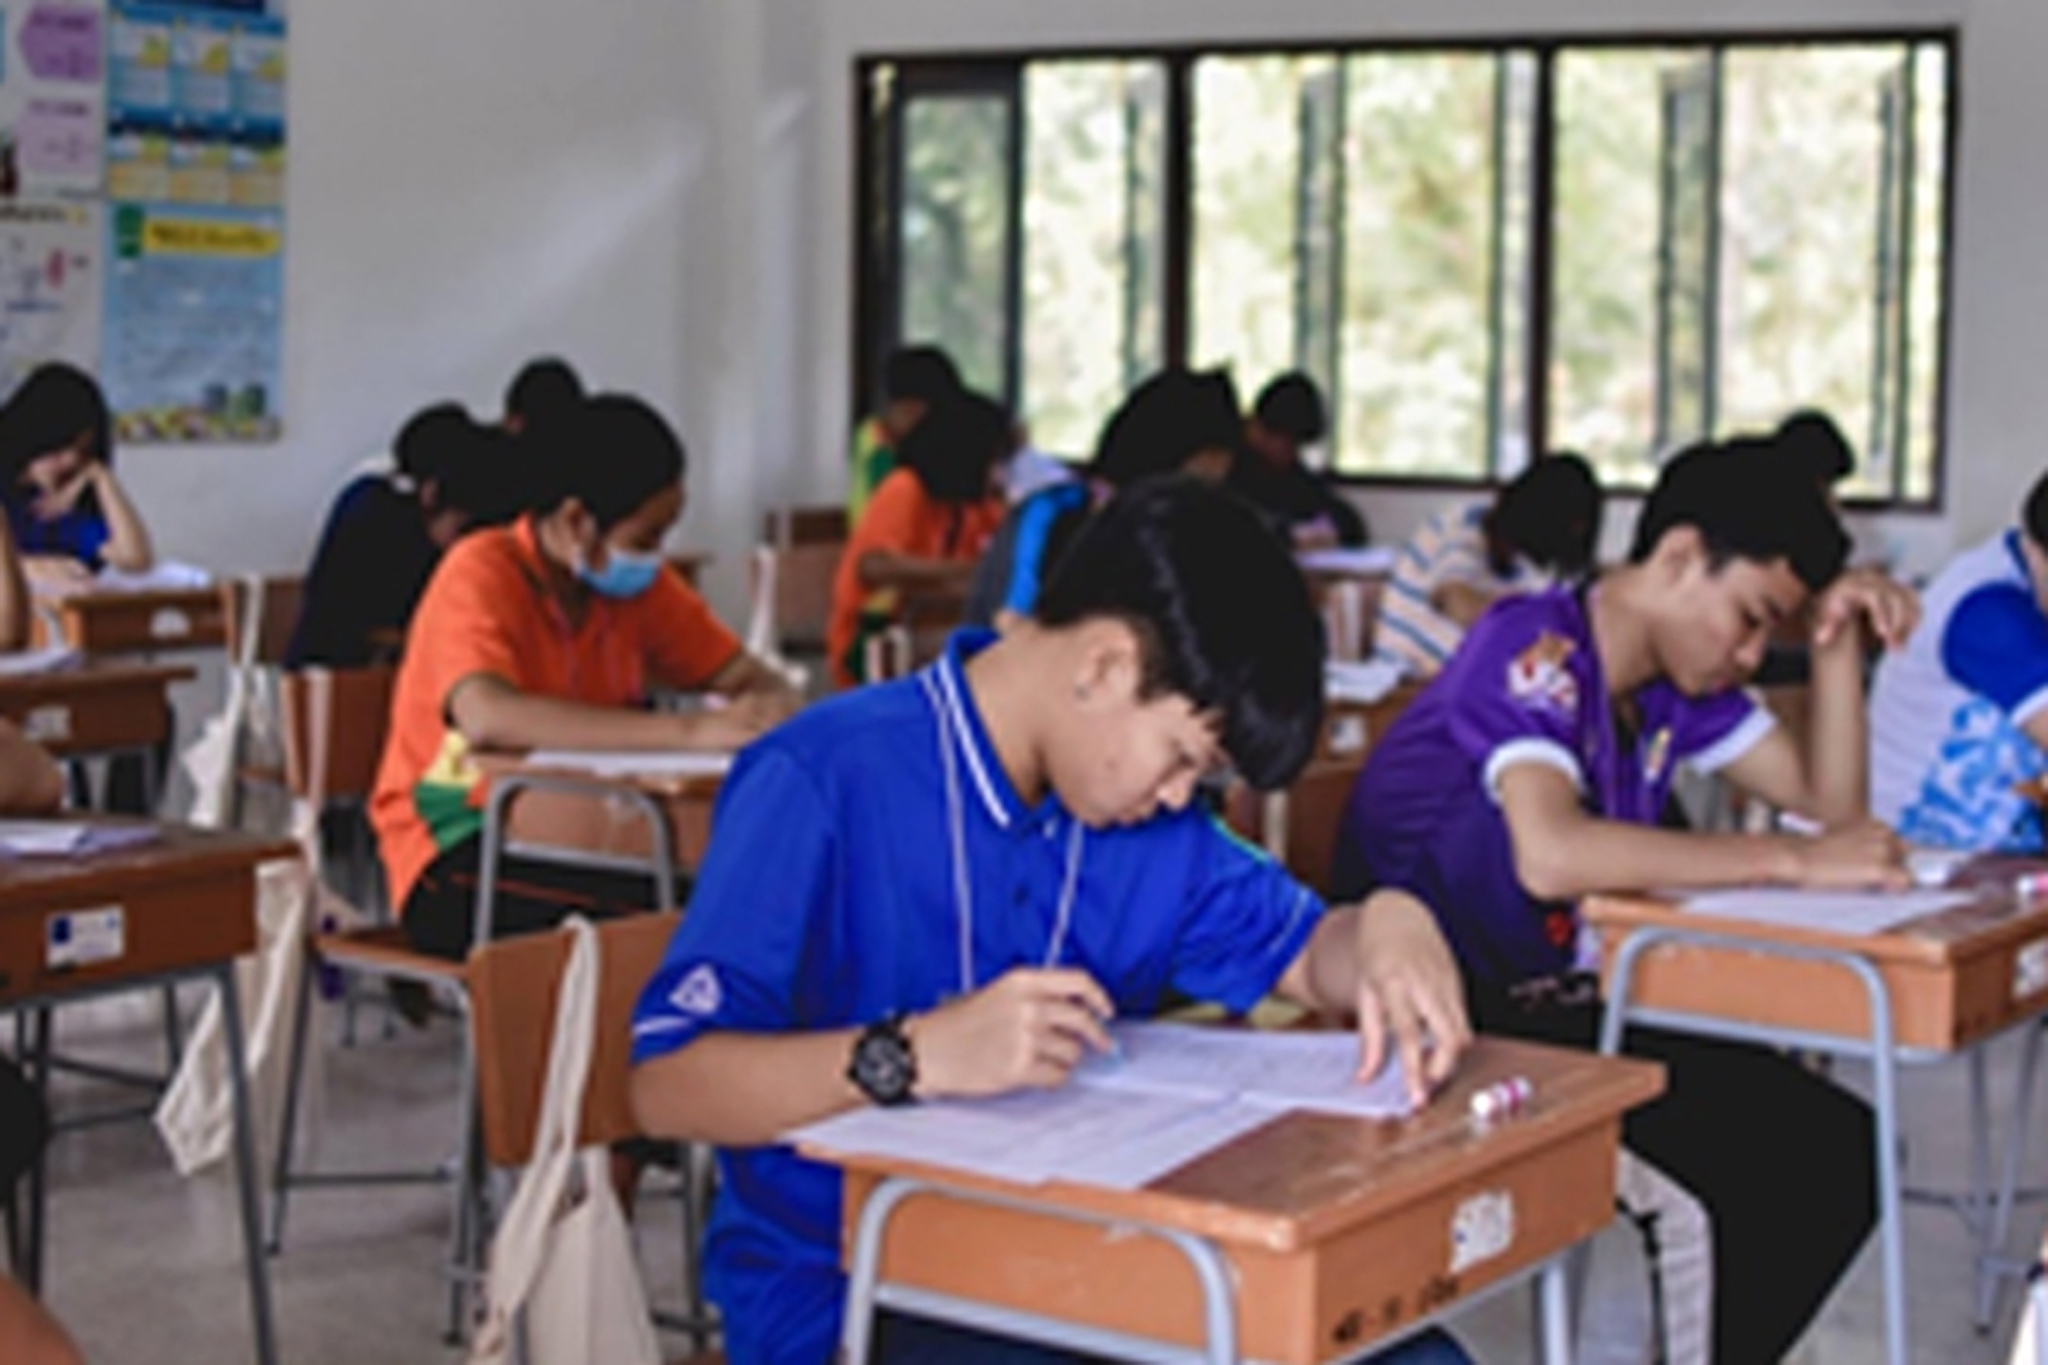 โครงการช่วยเหลือค่ายอาสาเพื่อการศึกษา คณะศึกษาศาสตร์ มหาวิทยาลัยขอนแก่น วันที่ 16 ธันวาคม  2563 ณ  คณะศึกษาศาสตร์ มหาวิทยาลัยขอนแก่น จ.ขอนแก่น     